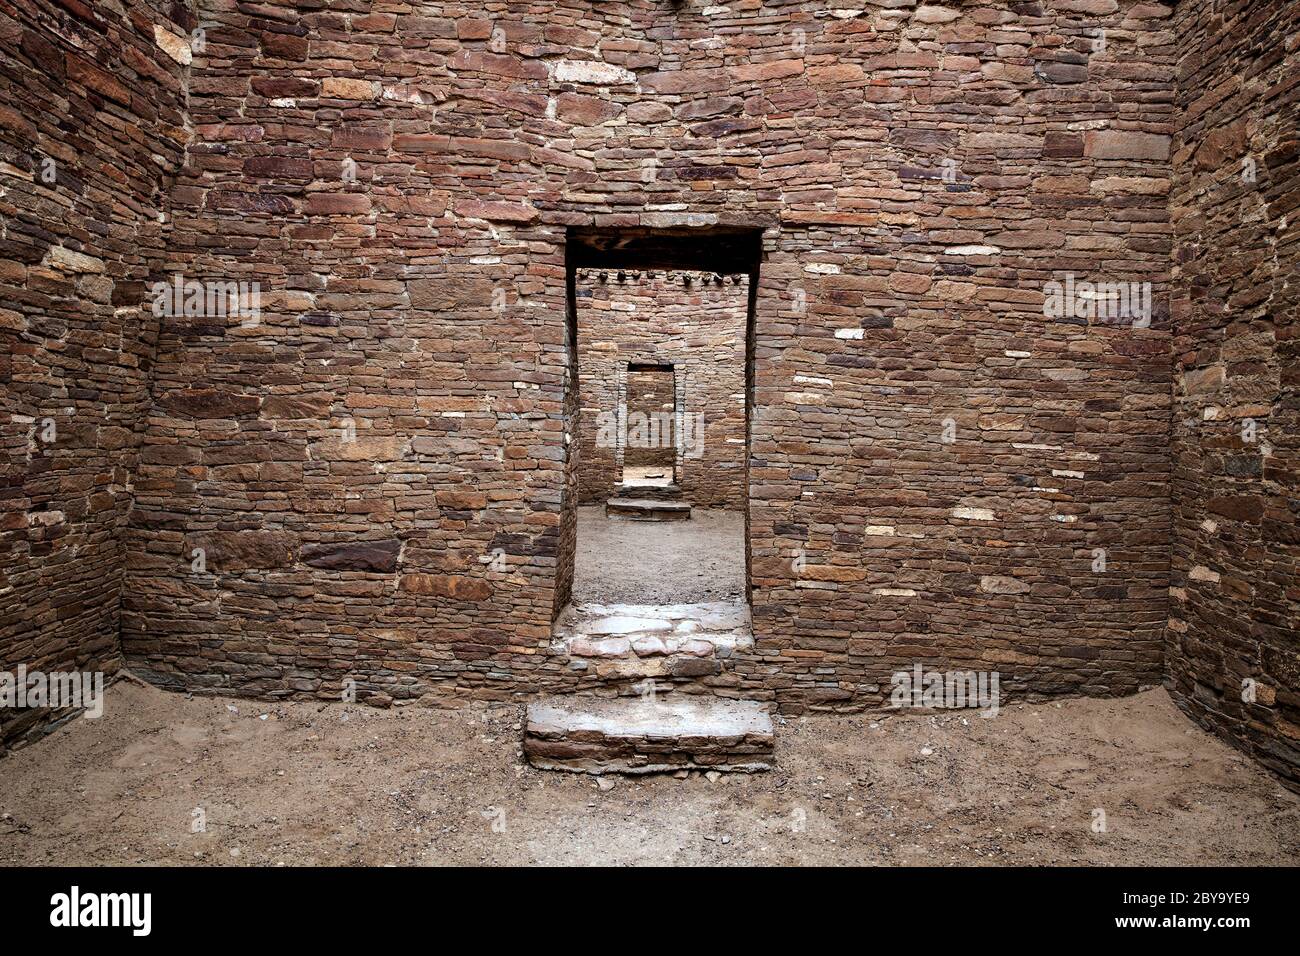 NM00602-00...NEW MEXICO - Mauerwerk Steinmauern und Türen in Pueblo Bonito von den frühen Chaco Menschen gebaut. Chaco Kultur National Historic Park. Stockfoto